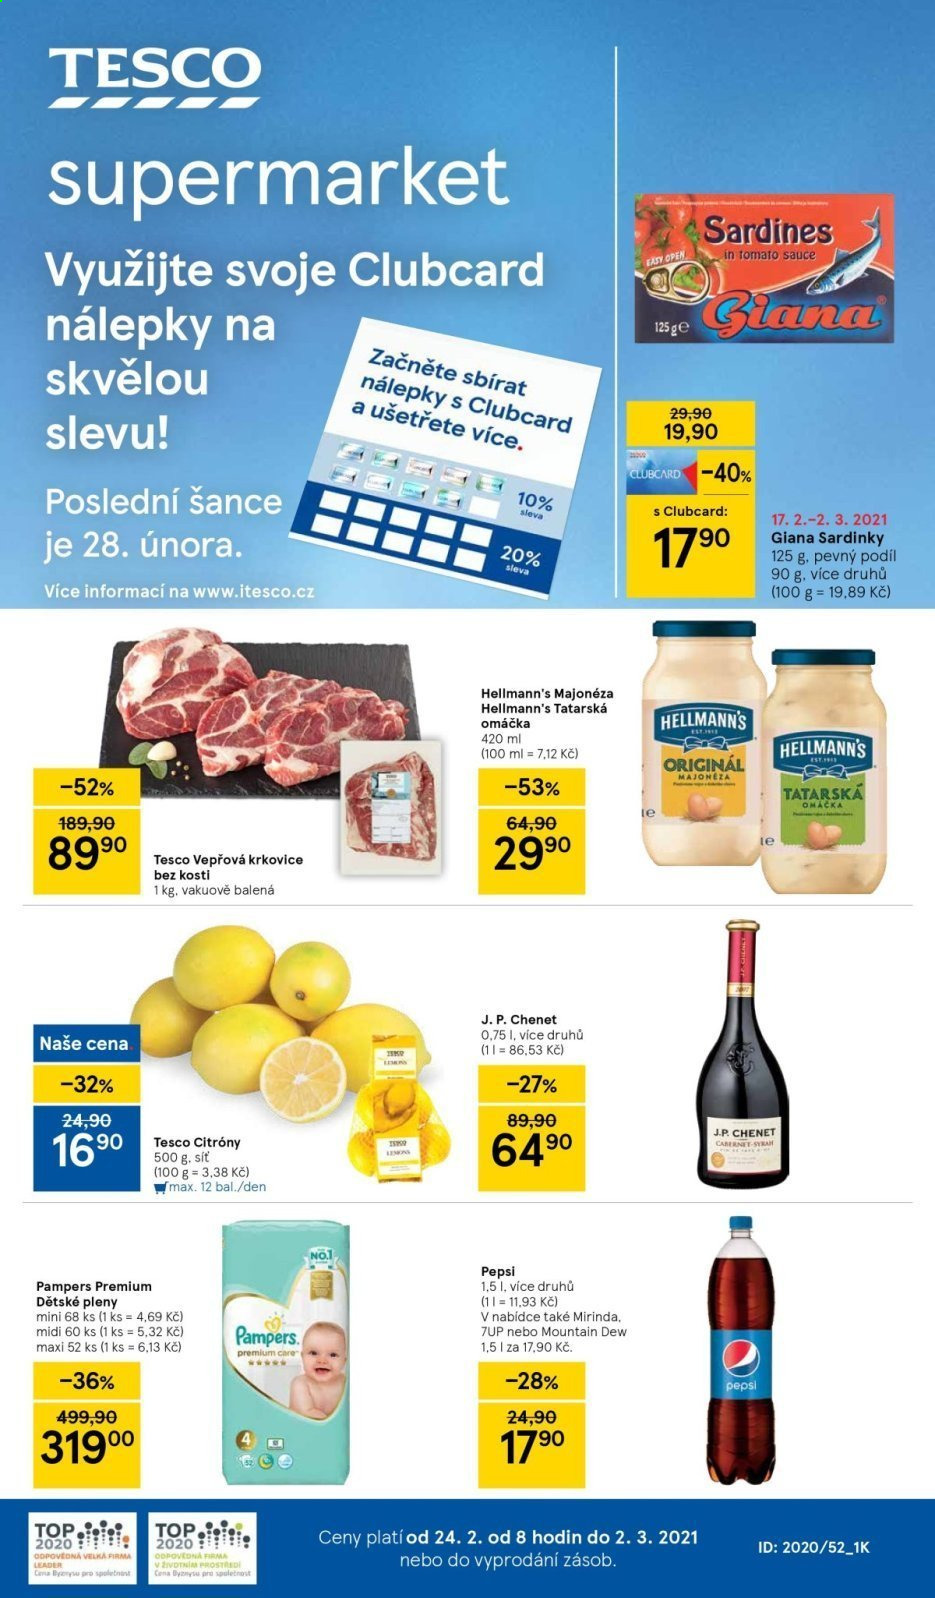 Leták TESCO supermarket - 24. 2. 2021 - 2. 3. 2021. 